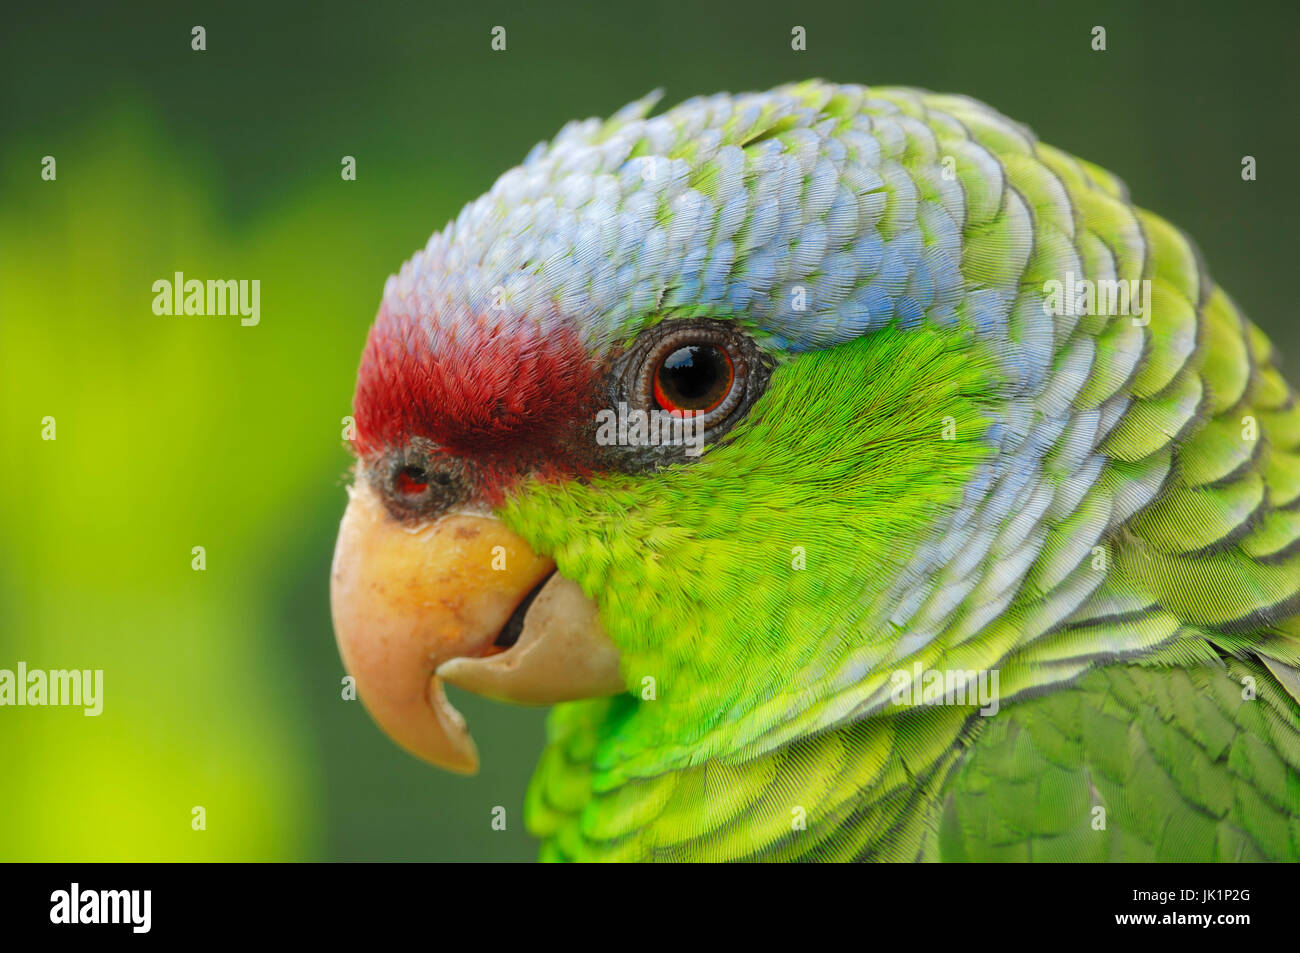 Flieder-gekrönte Amazon / (Amazona Finschi) / Flieder-gekrönter Papagei |  Blaukappen-Amazone / (Amazona Finschi Stockfotografie - Alamy